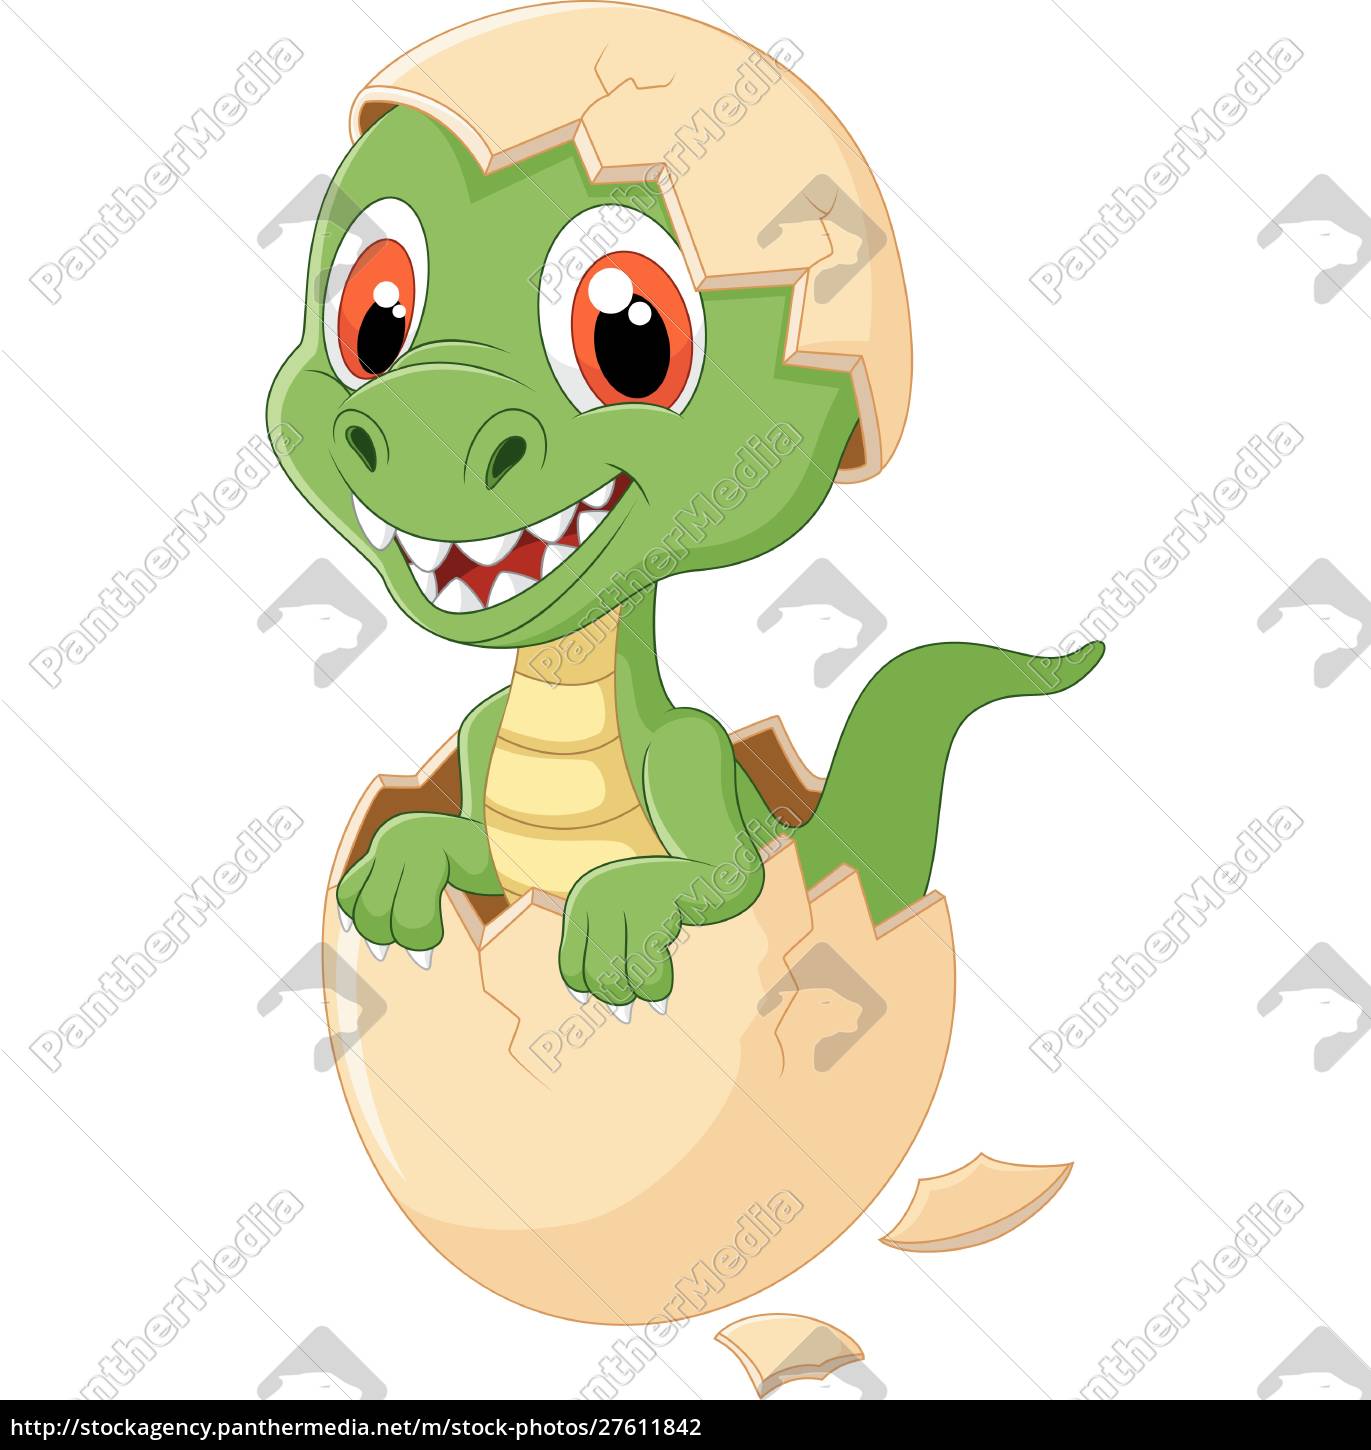 Dinossauro de desenho animado verde engraçado dino bebê fofo